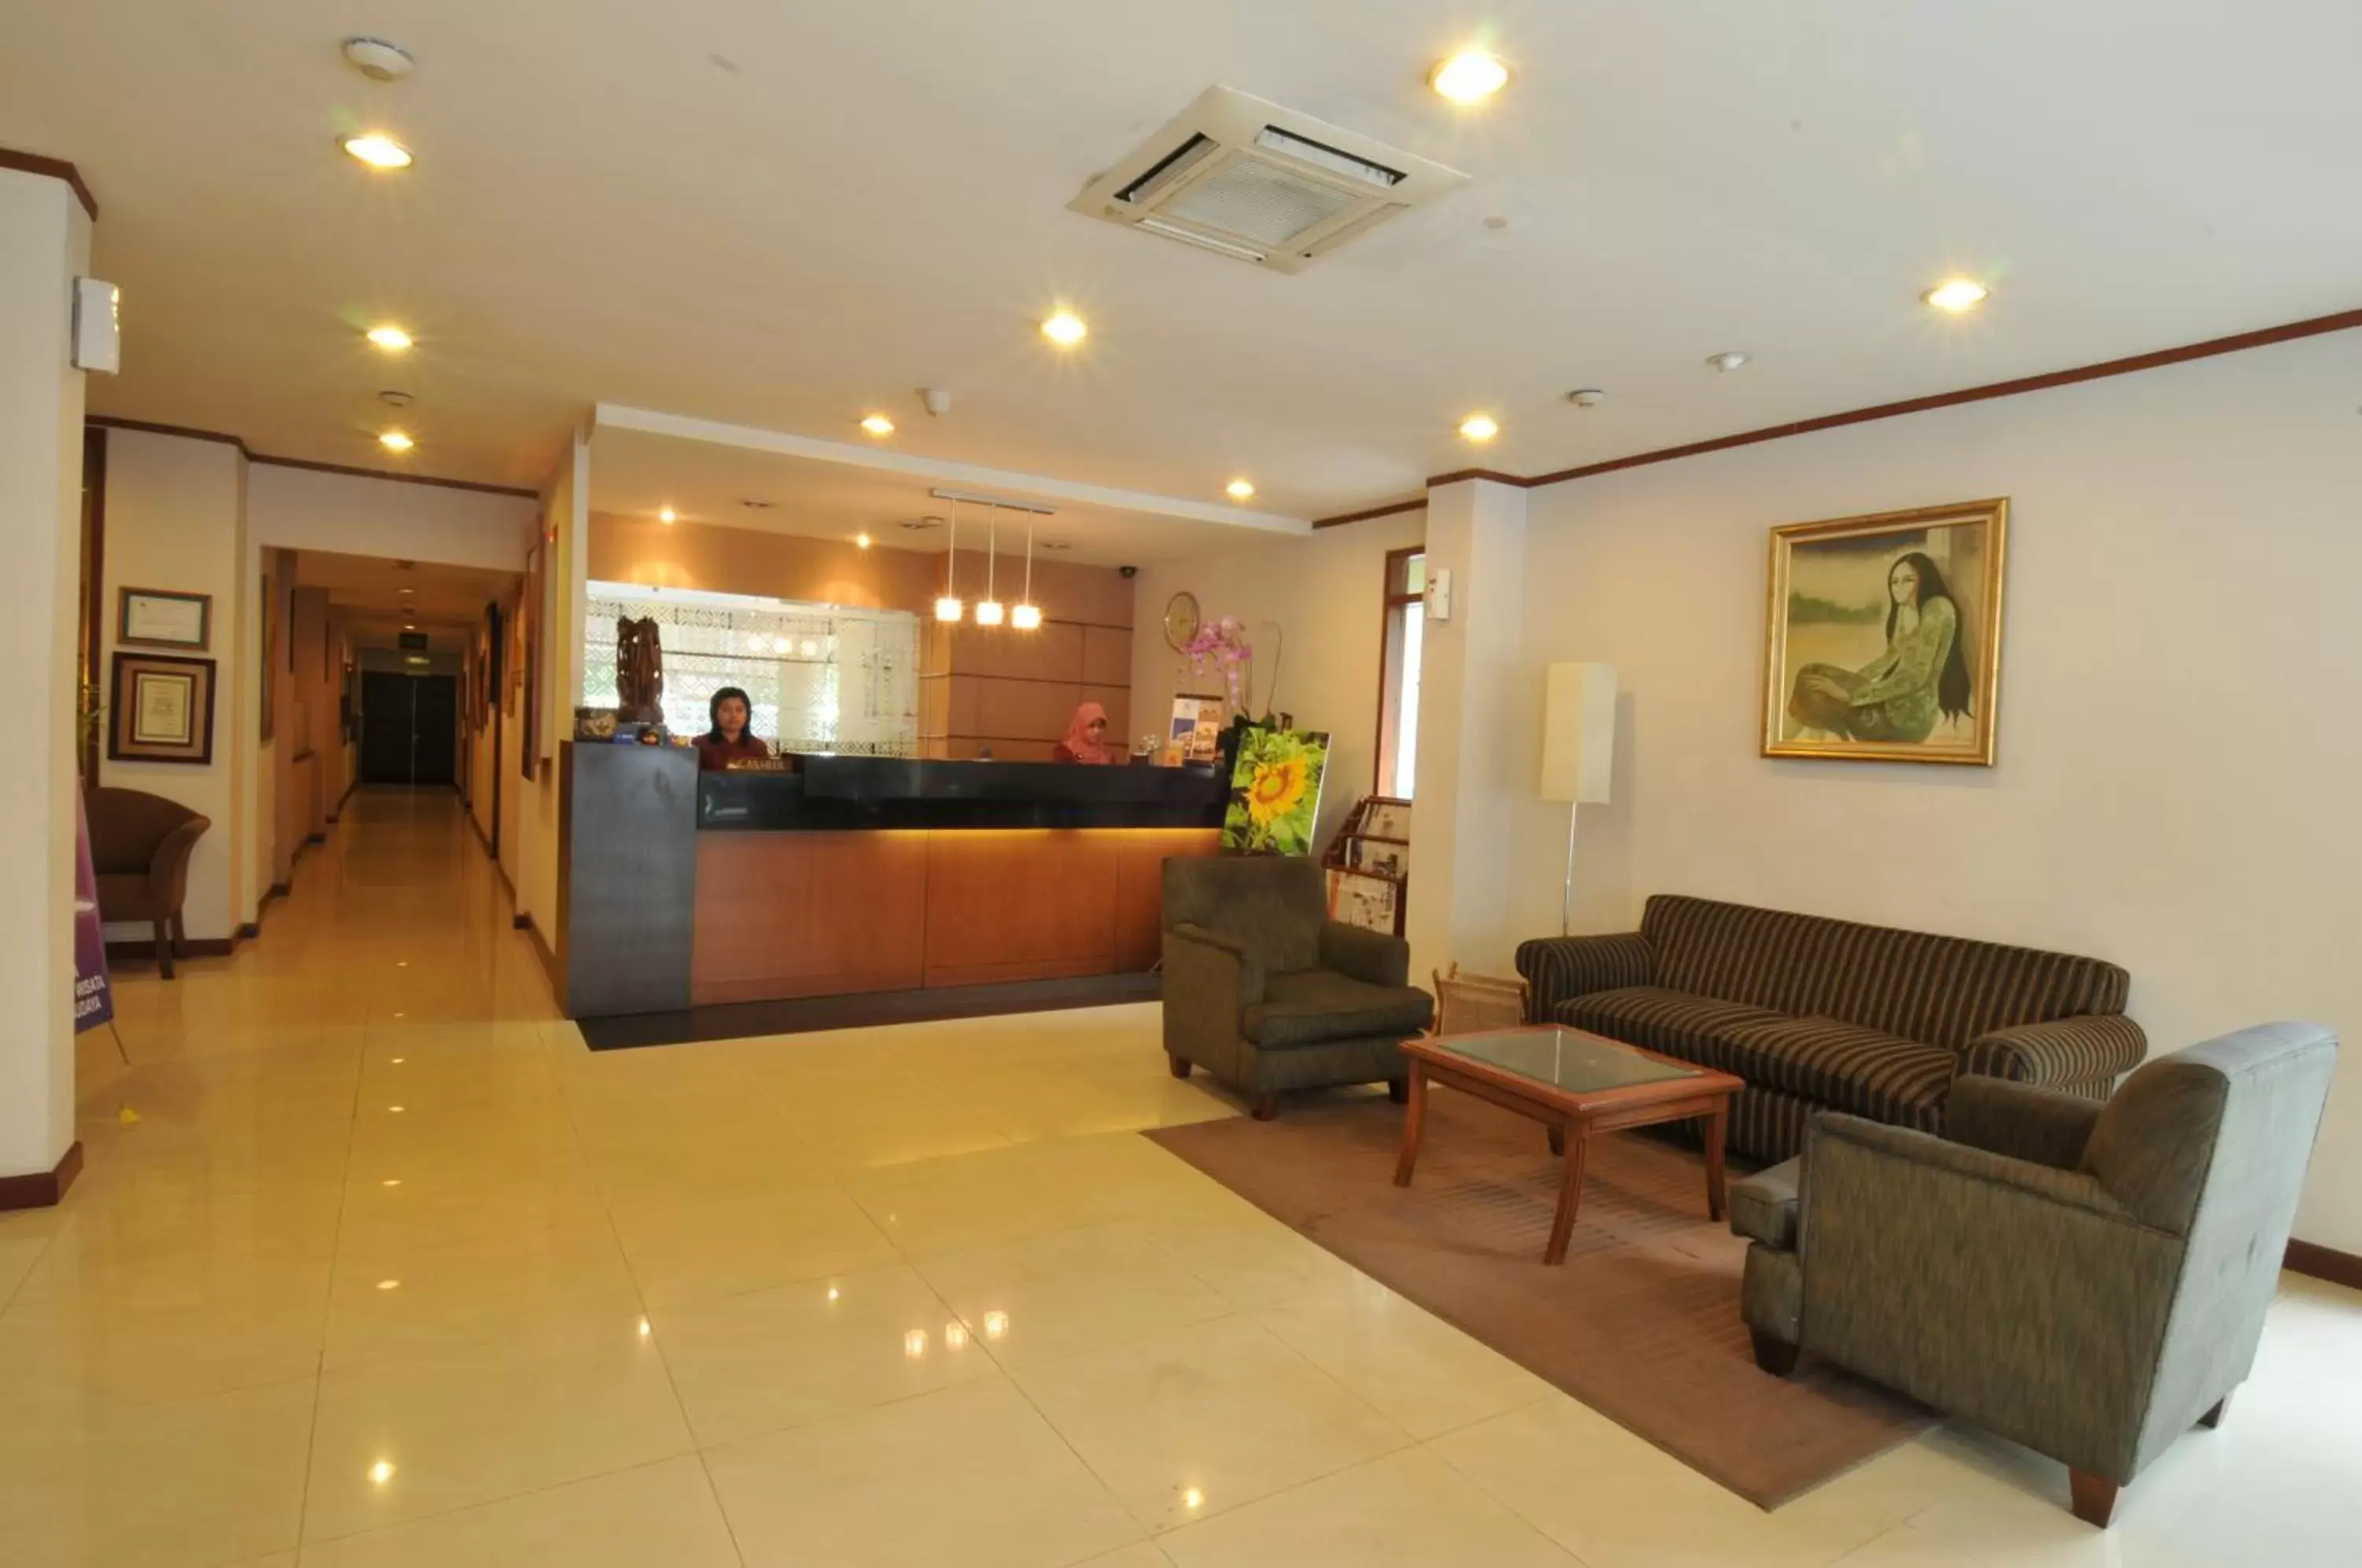 Lobby or reception, Lobby/Reception in Cipta Hotel Wahid Hasyim